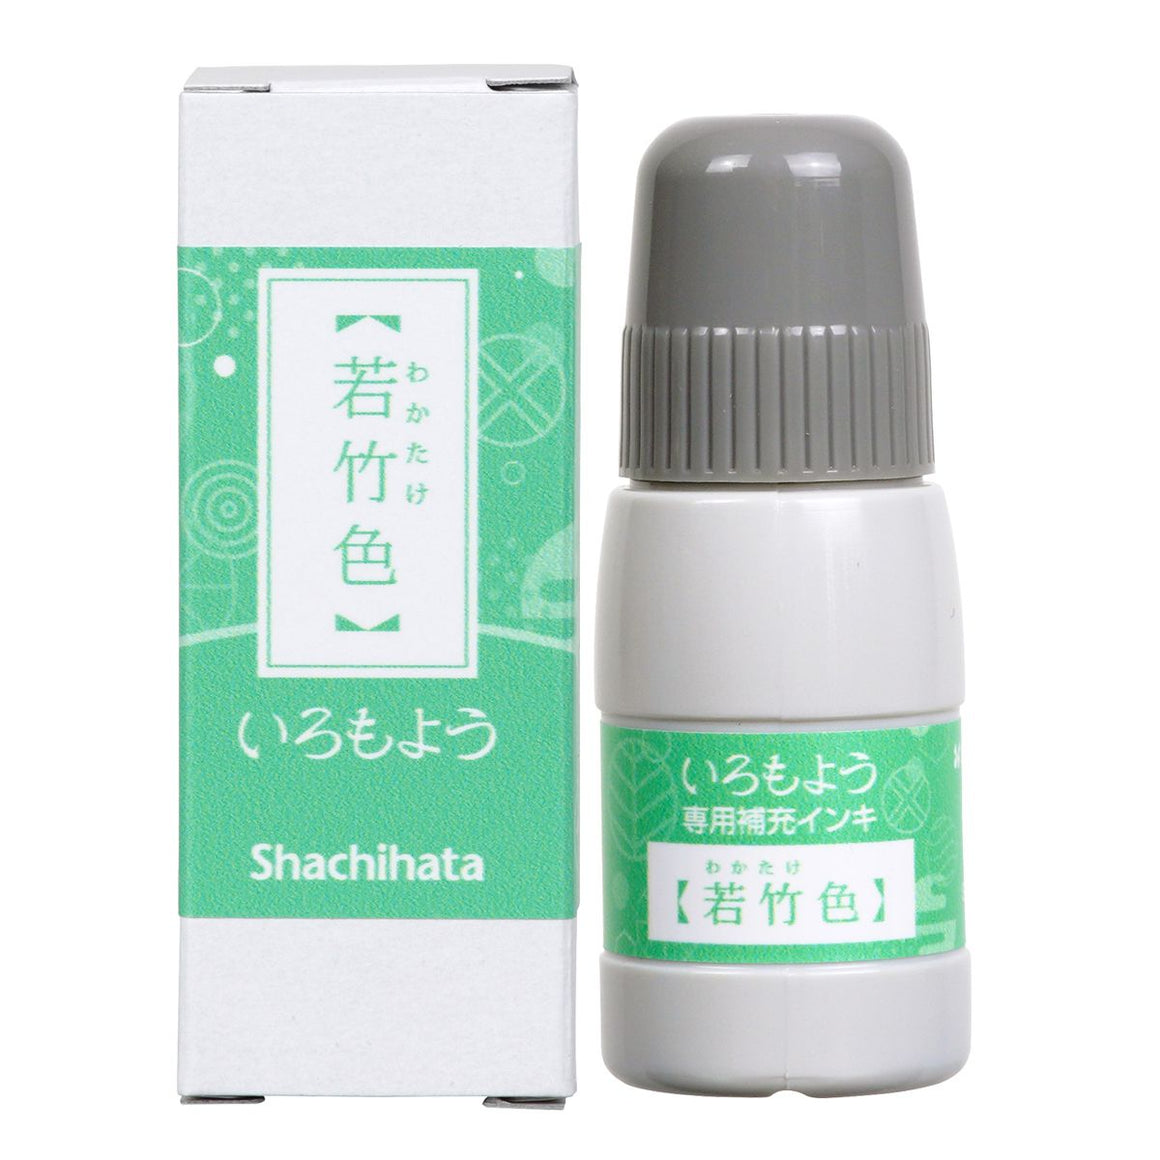 REFILL: Shachihata Iromoyo Ink Refill Bottle - Wakatake Iro 若竹色 - SAC-20-PG